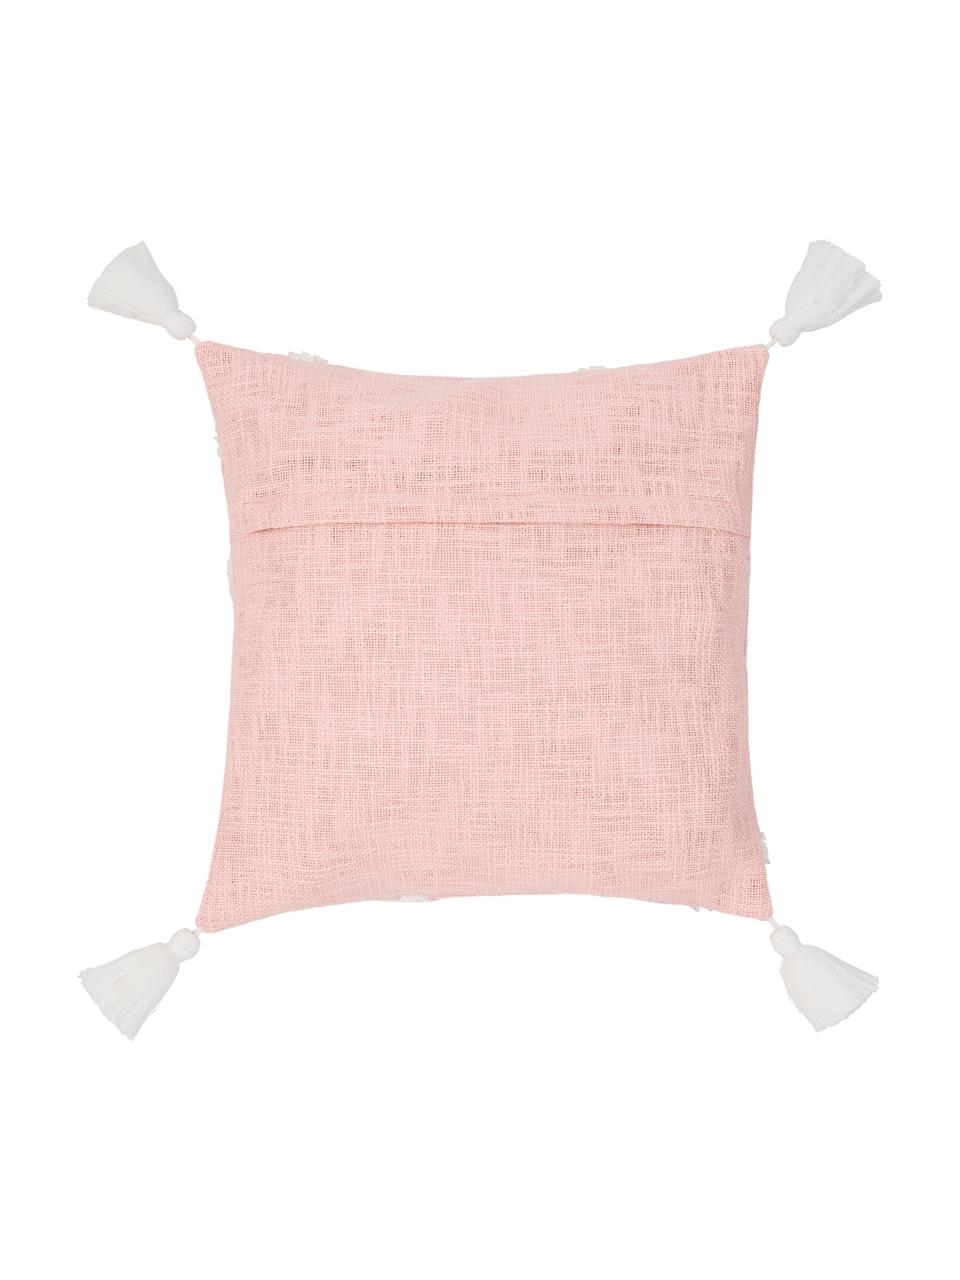 Poszewka na poduszkę z tuftowaną dekoracją Tikki, 100% bawełna, Morelowy, S 40 x D 40 cm